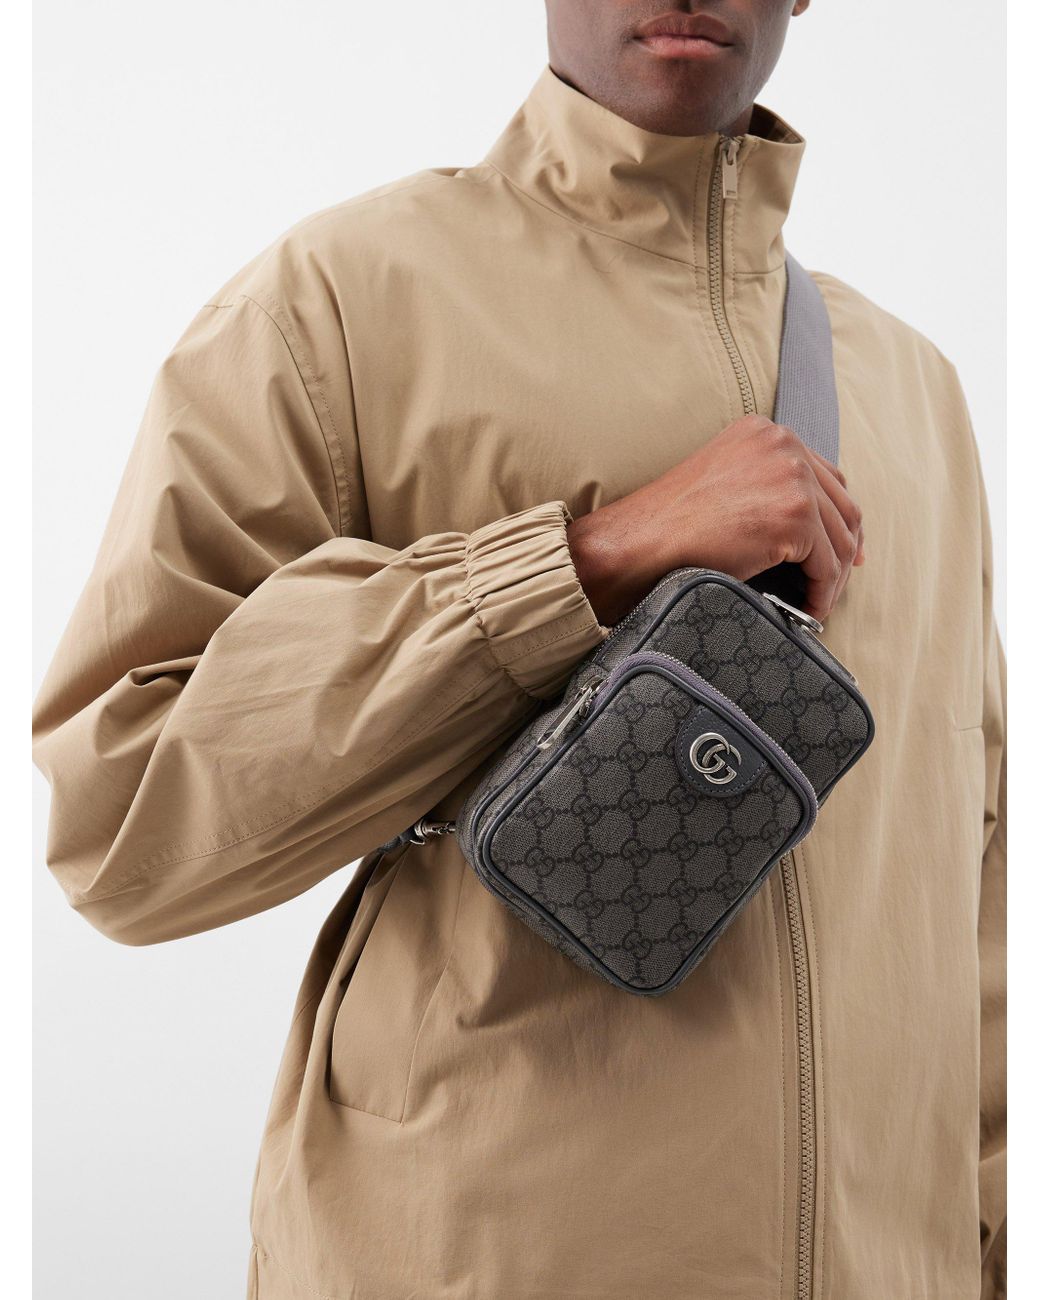 Gucci GG-supreme Canvas Cross-body Bag for Men